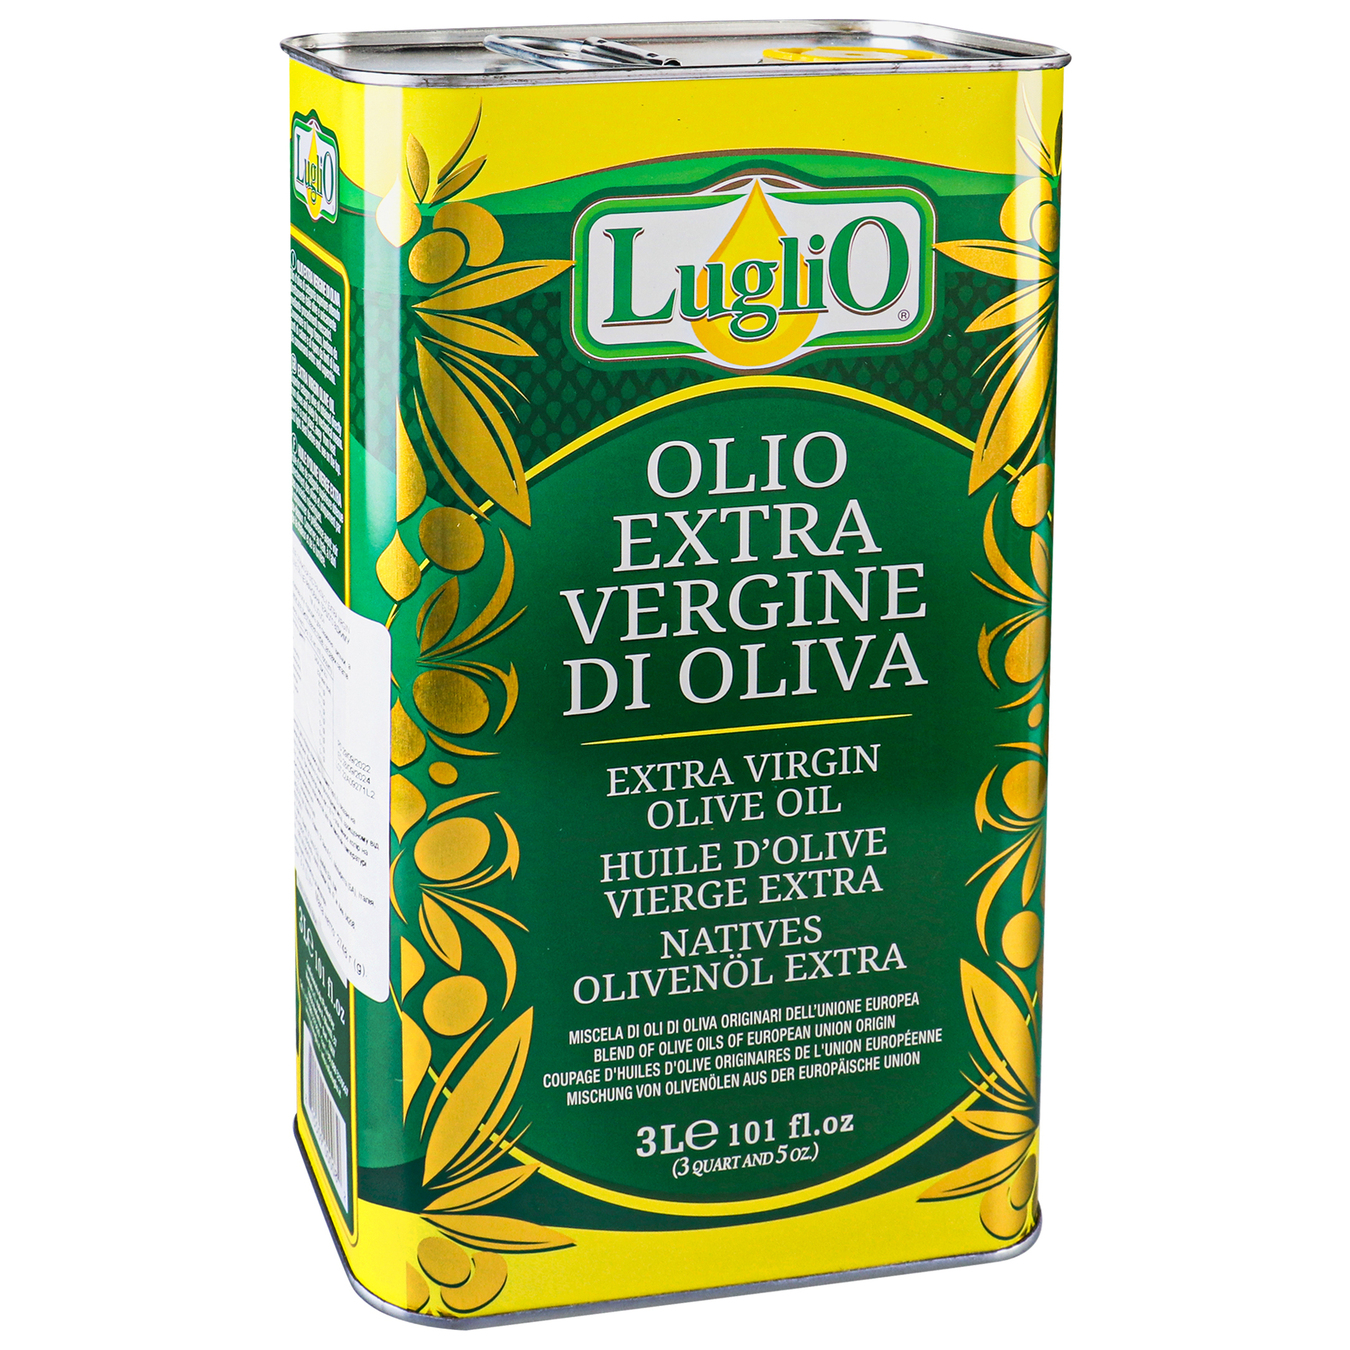 Luglio Unrefined Extra Virgin Olive Oil 3l iron can 2